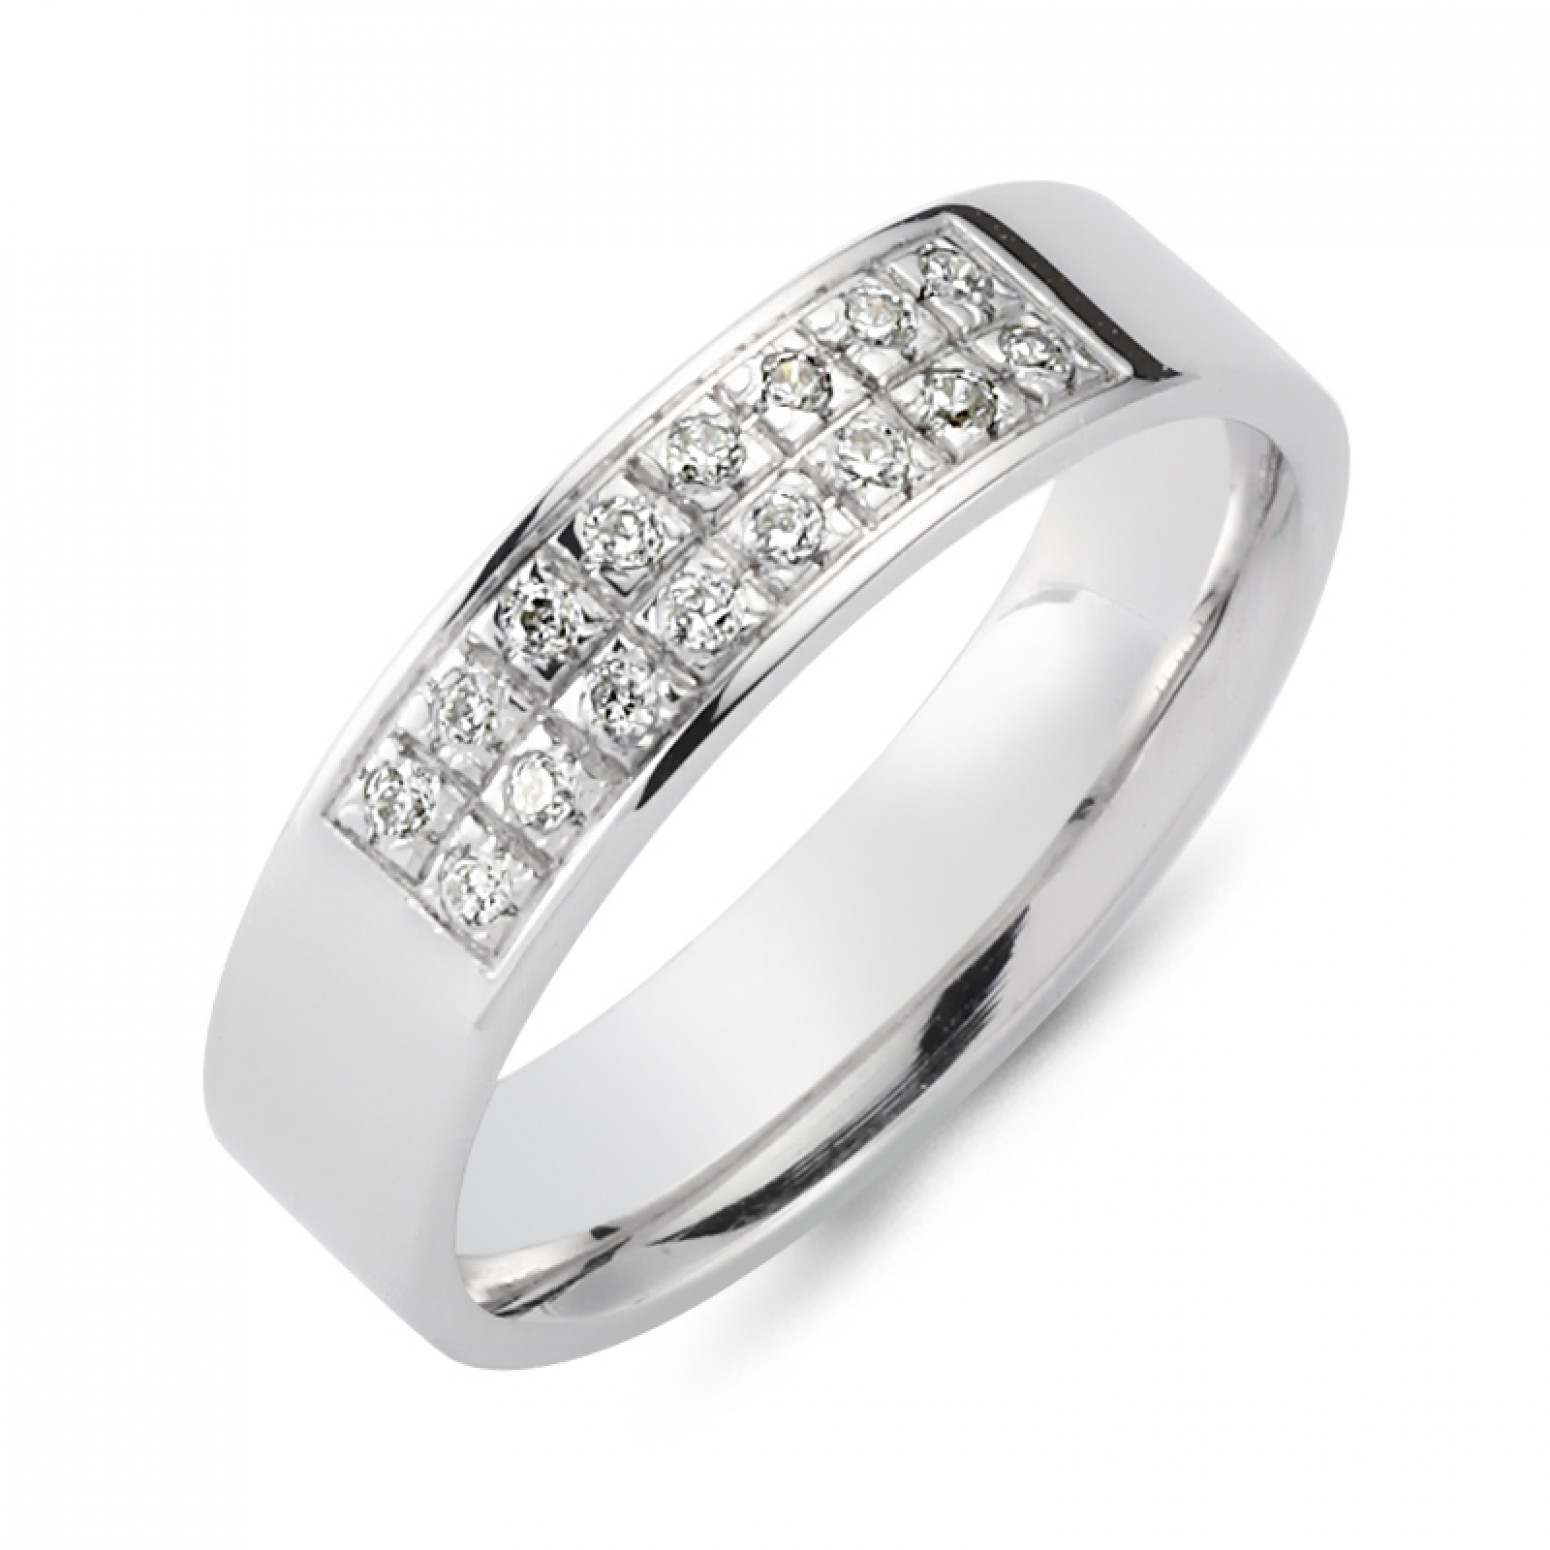 Chrilia wedding rings in white gold, K14, pair da2780 WEDDING RINGS Κοσμηματα - chrilia.gr